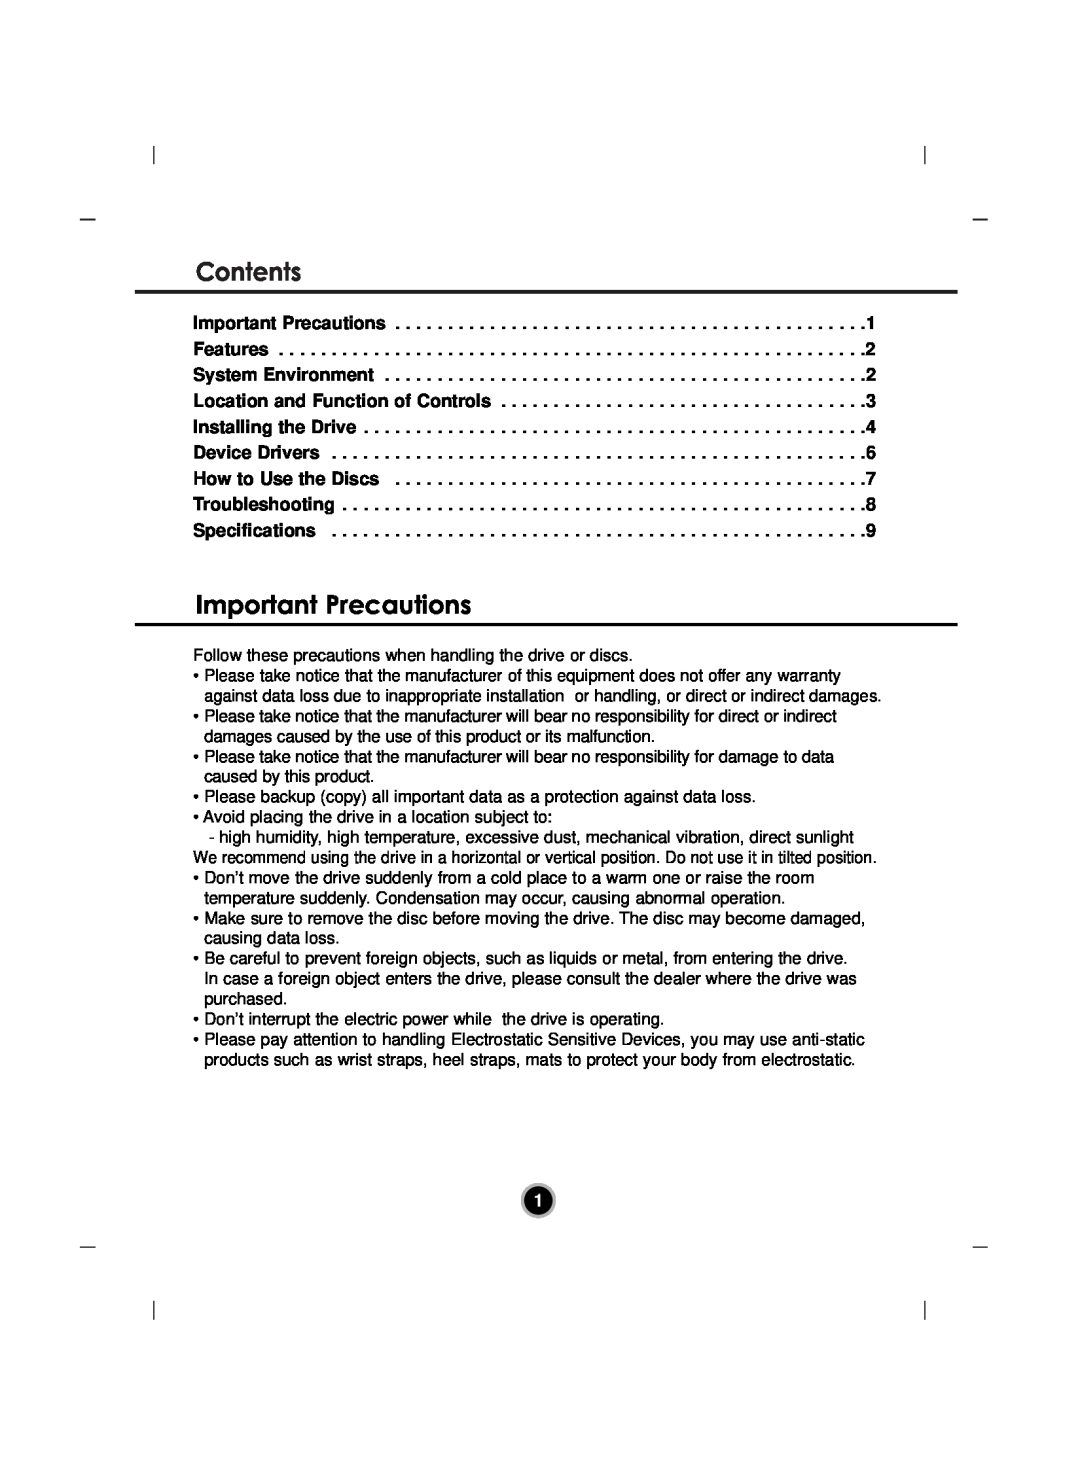 LG Electronics GH22 manual Contents, Important Precautions 